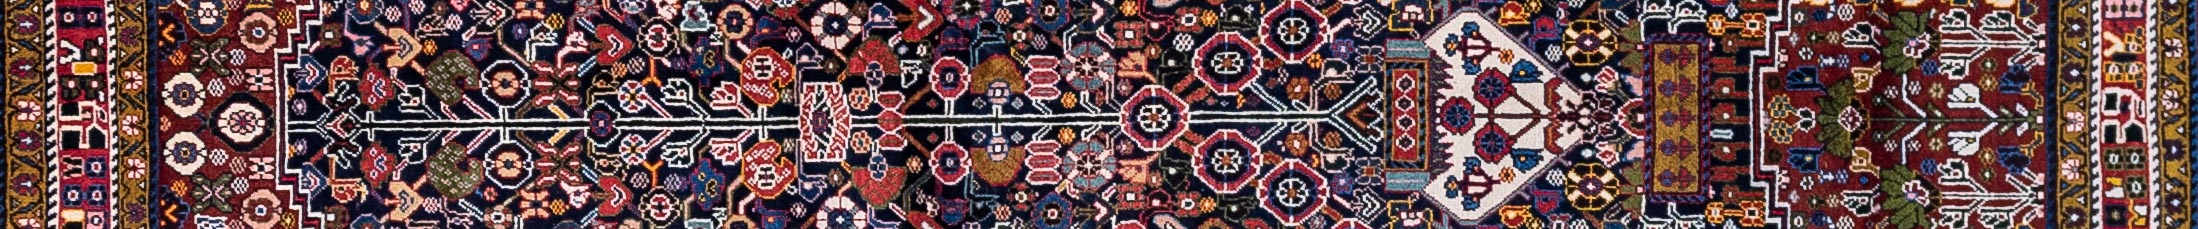 Shiraz Persian Carpet Rug N1Carpet Canada Montreal Tapis Persan 3950